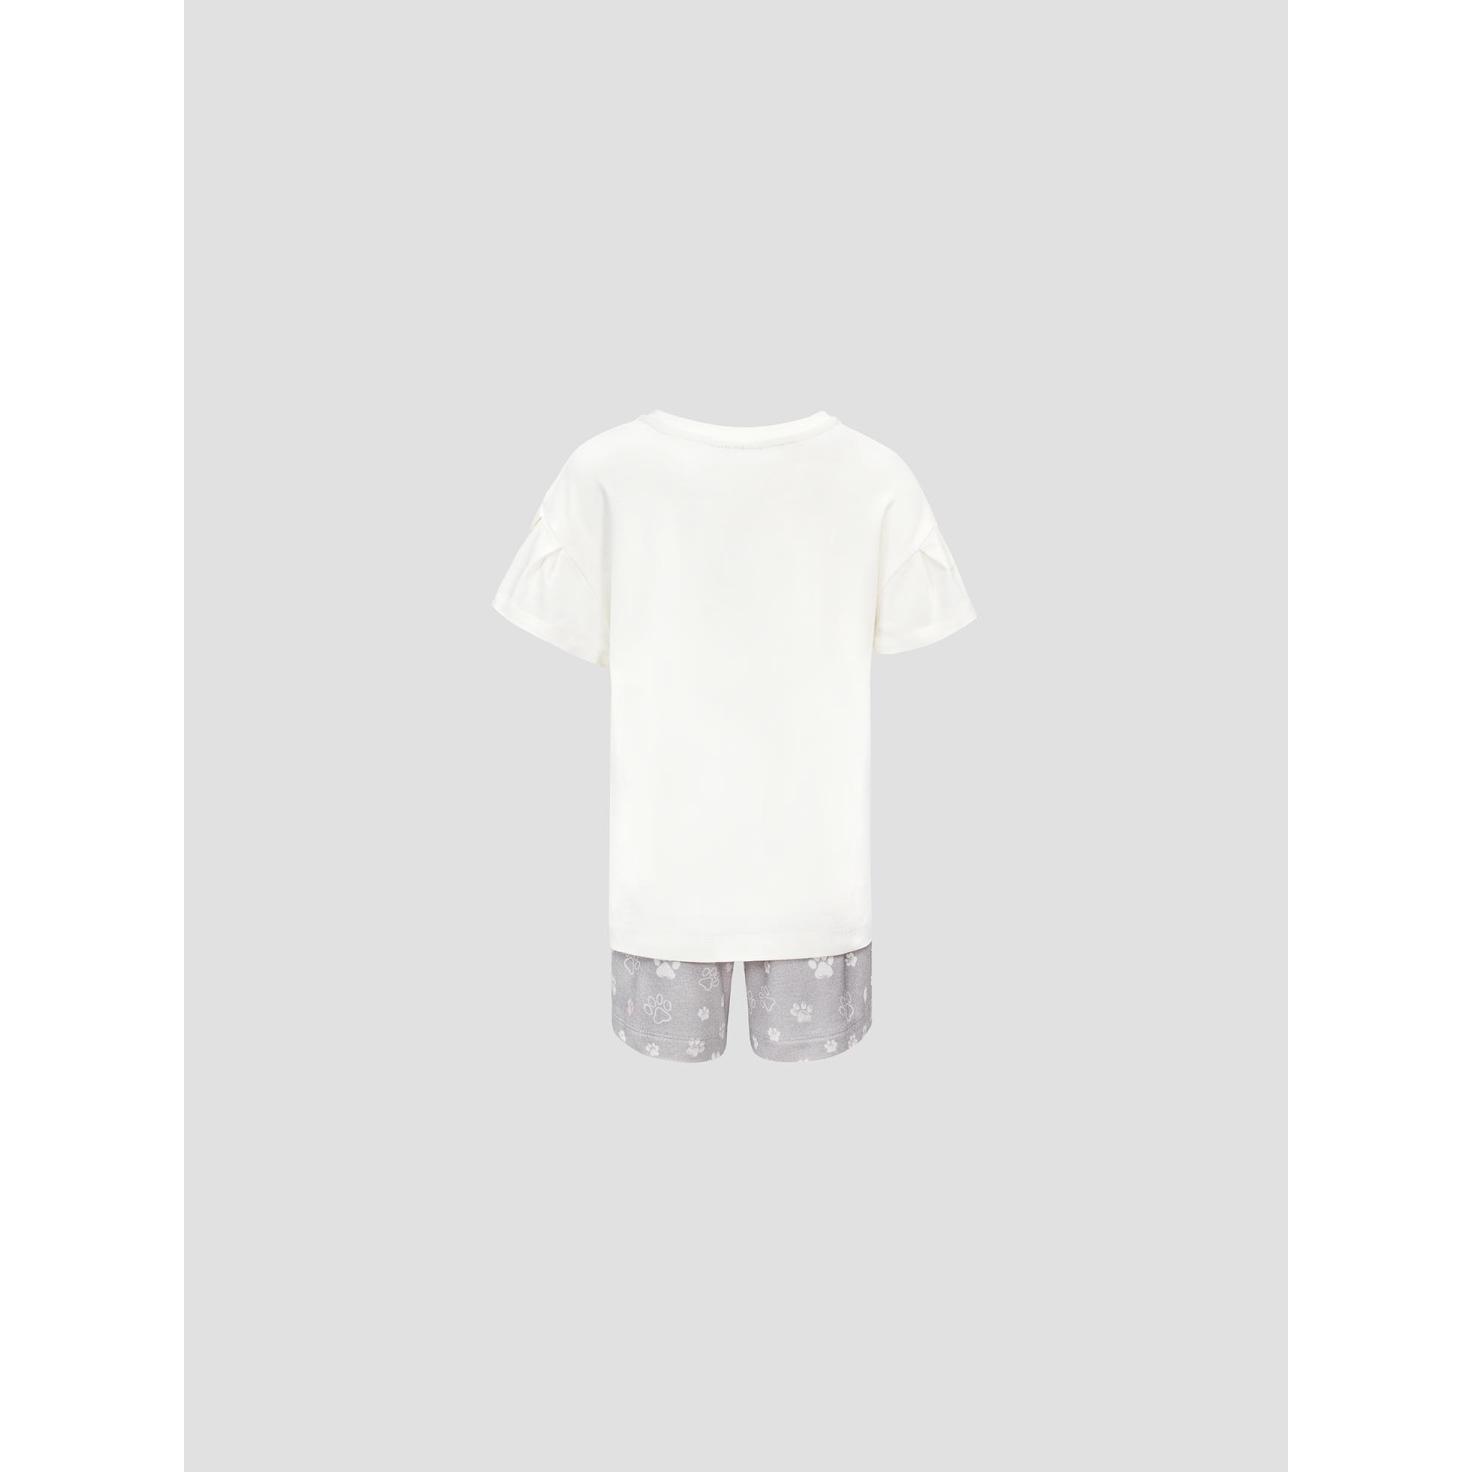 Пижама для девочек Kids by togas Китти бело-серая 116-122 см, цвет белый, размер 116-122 см - фото 2